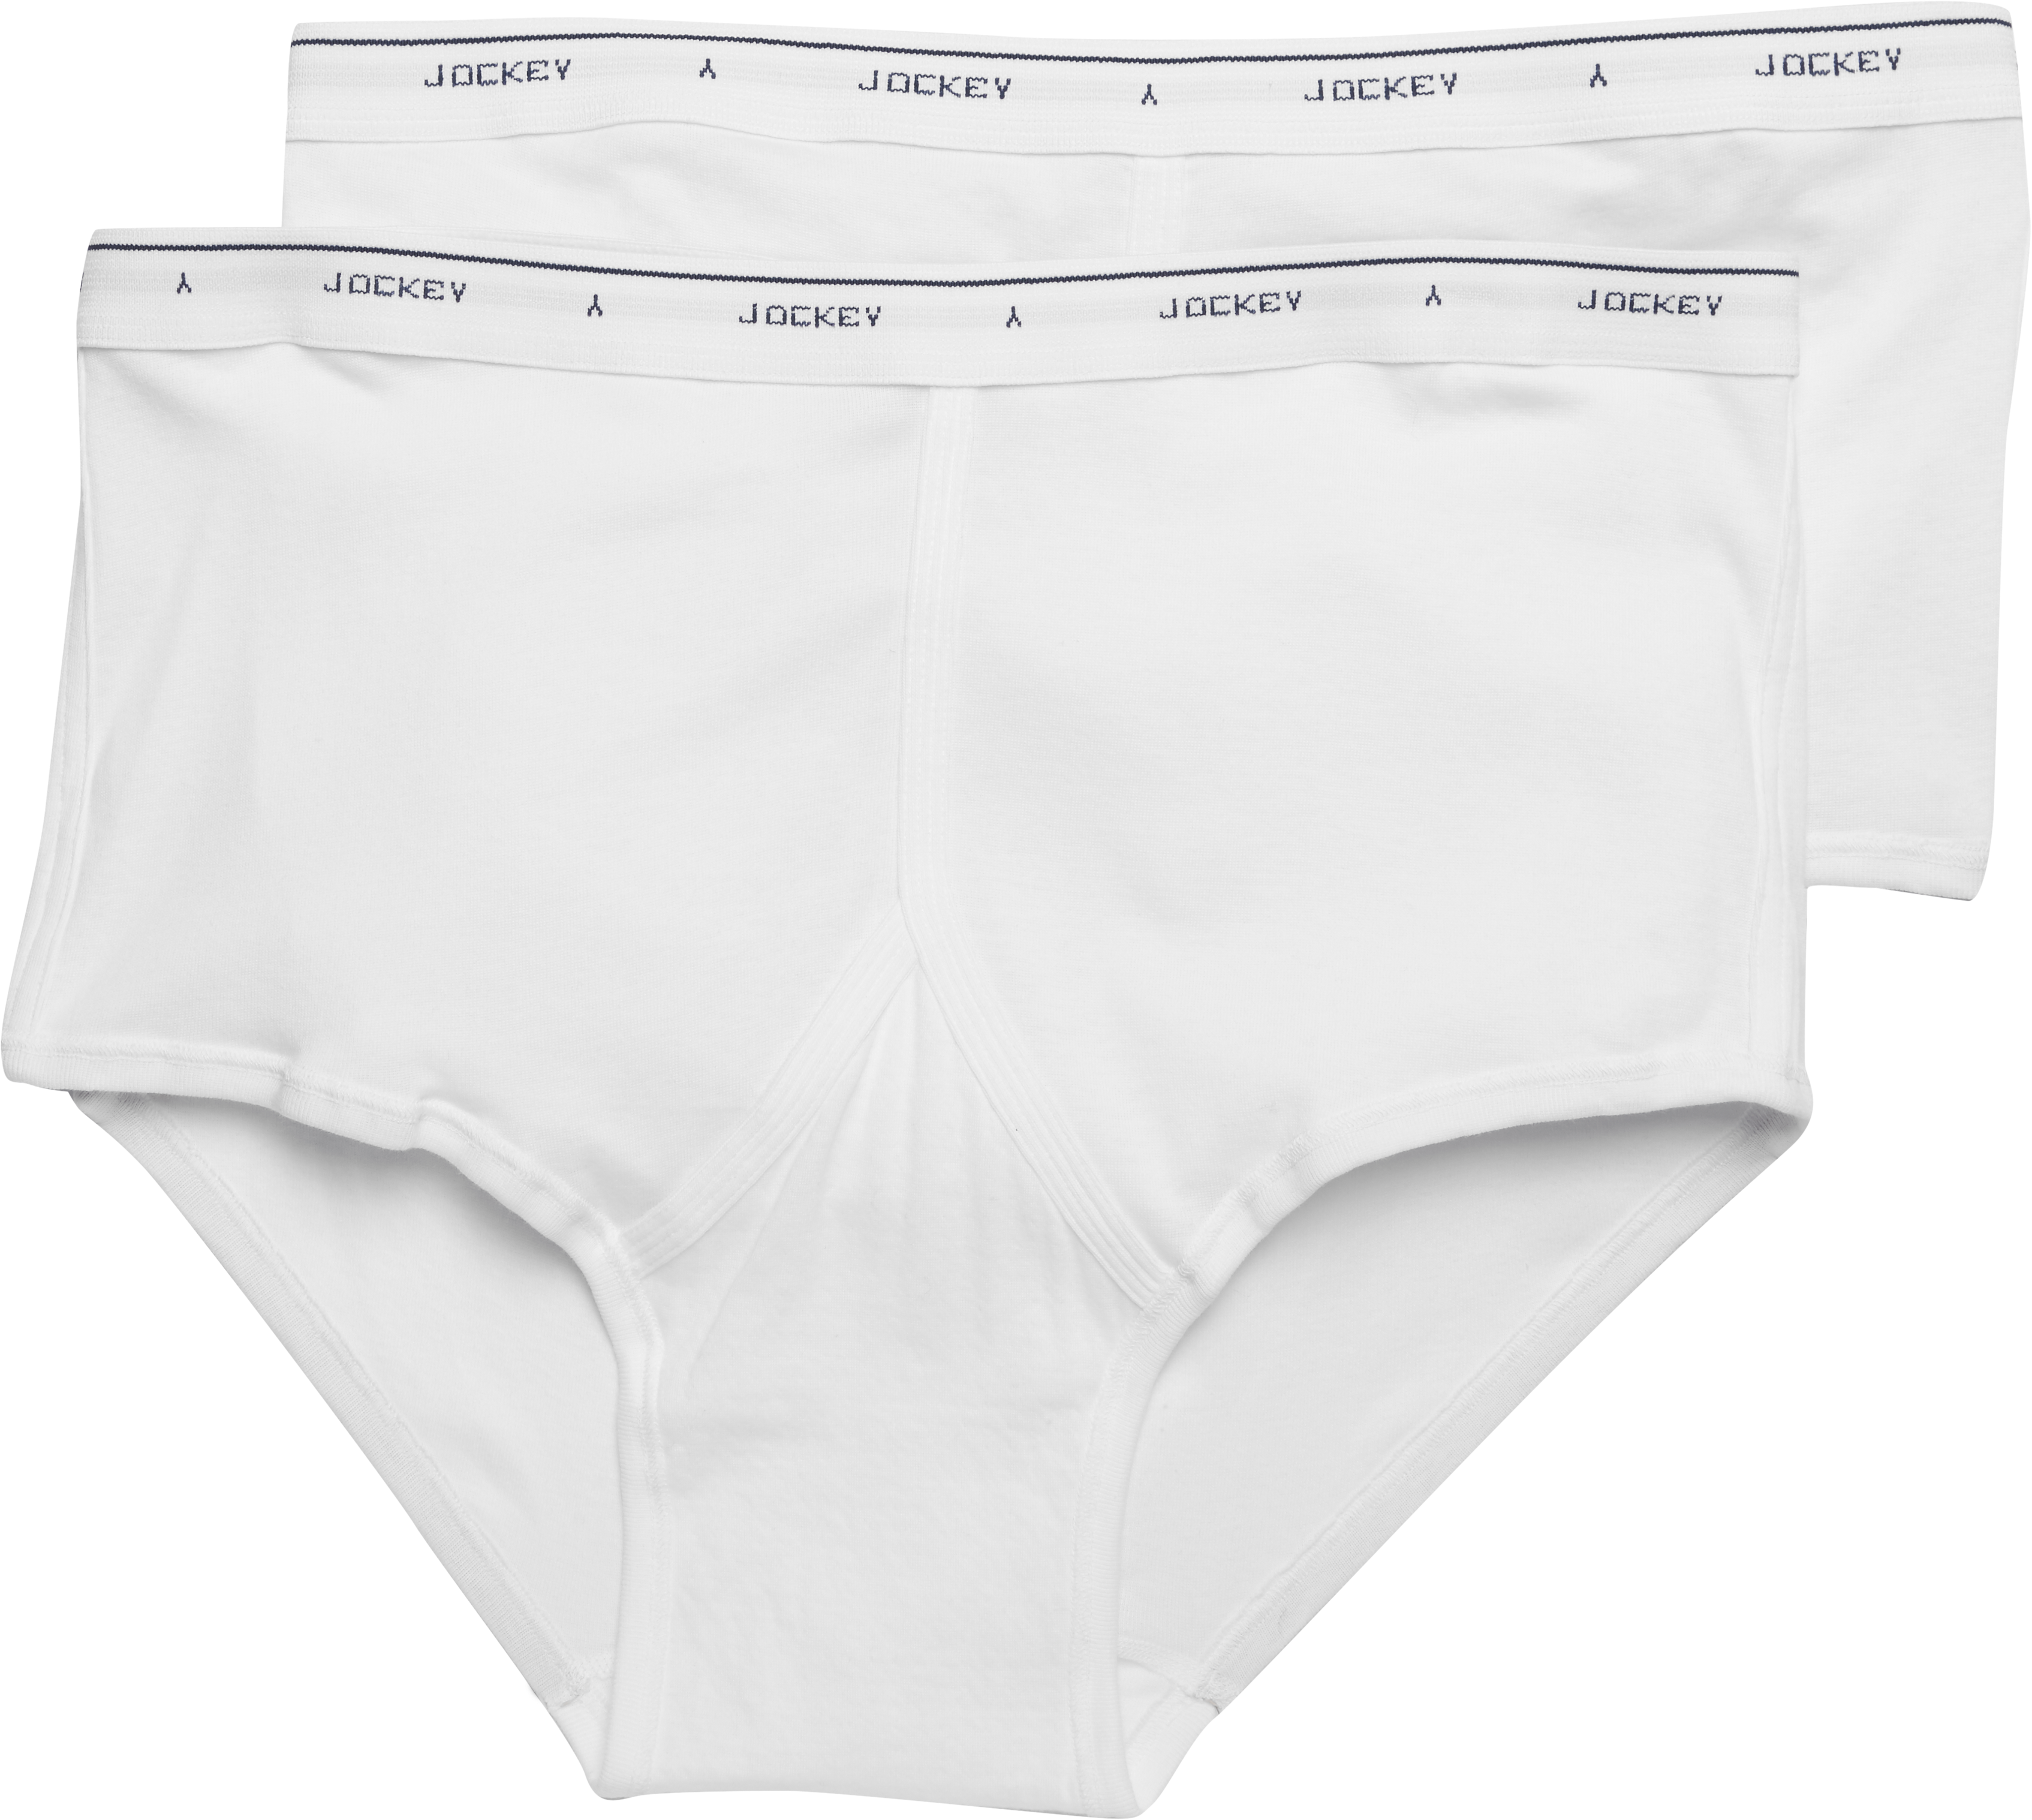 Jockey White Briefs, 2-pack - Men's Underwear | Men's Wearhouse